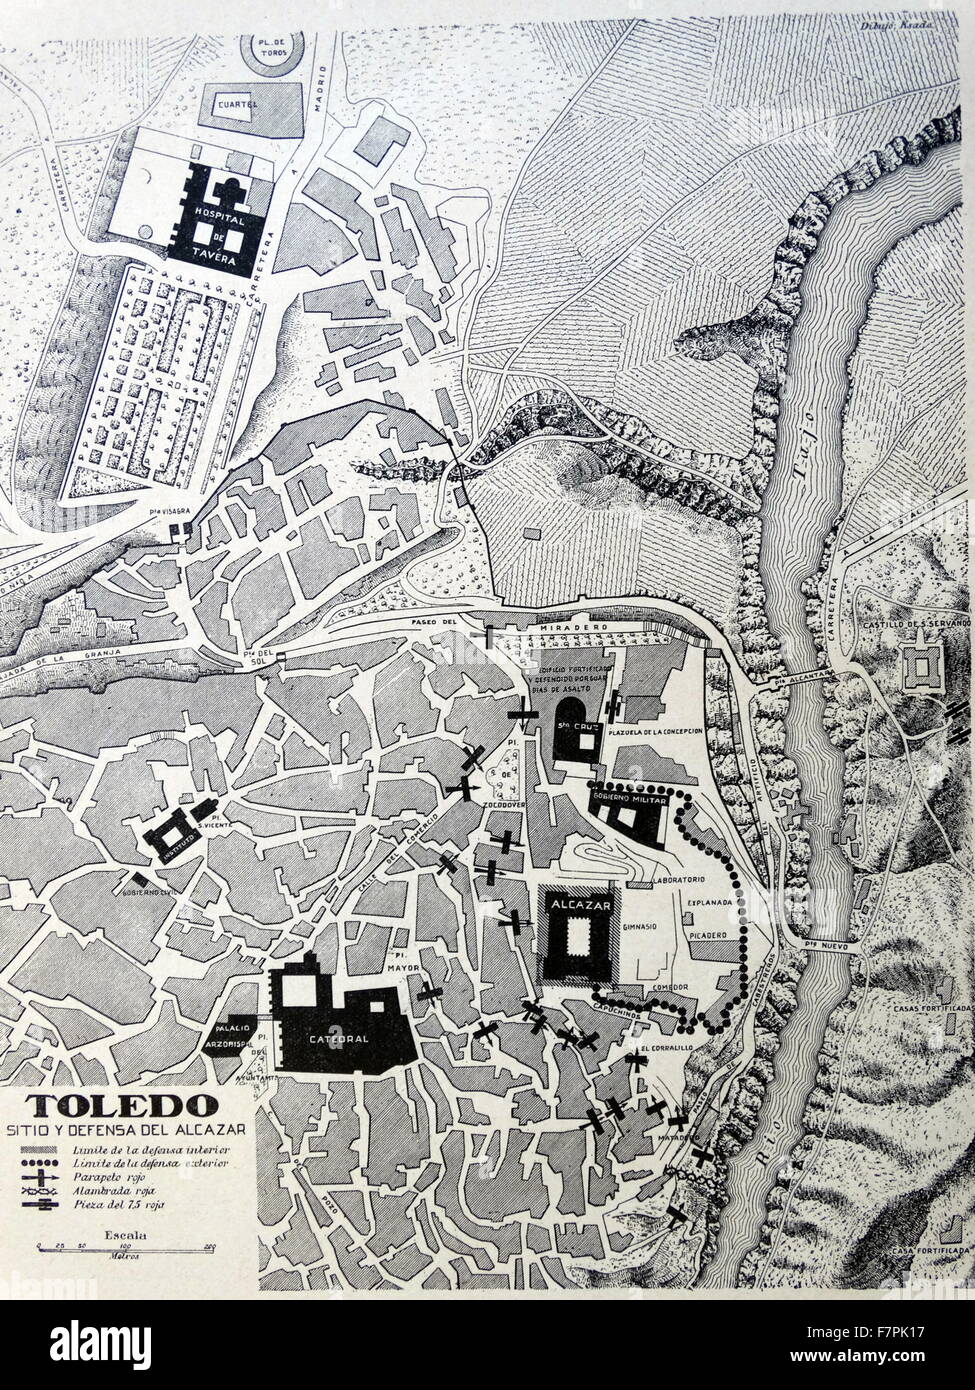 Carte illustrée de Tolède, Espagne. Datée 1937 Banque D'Images